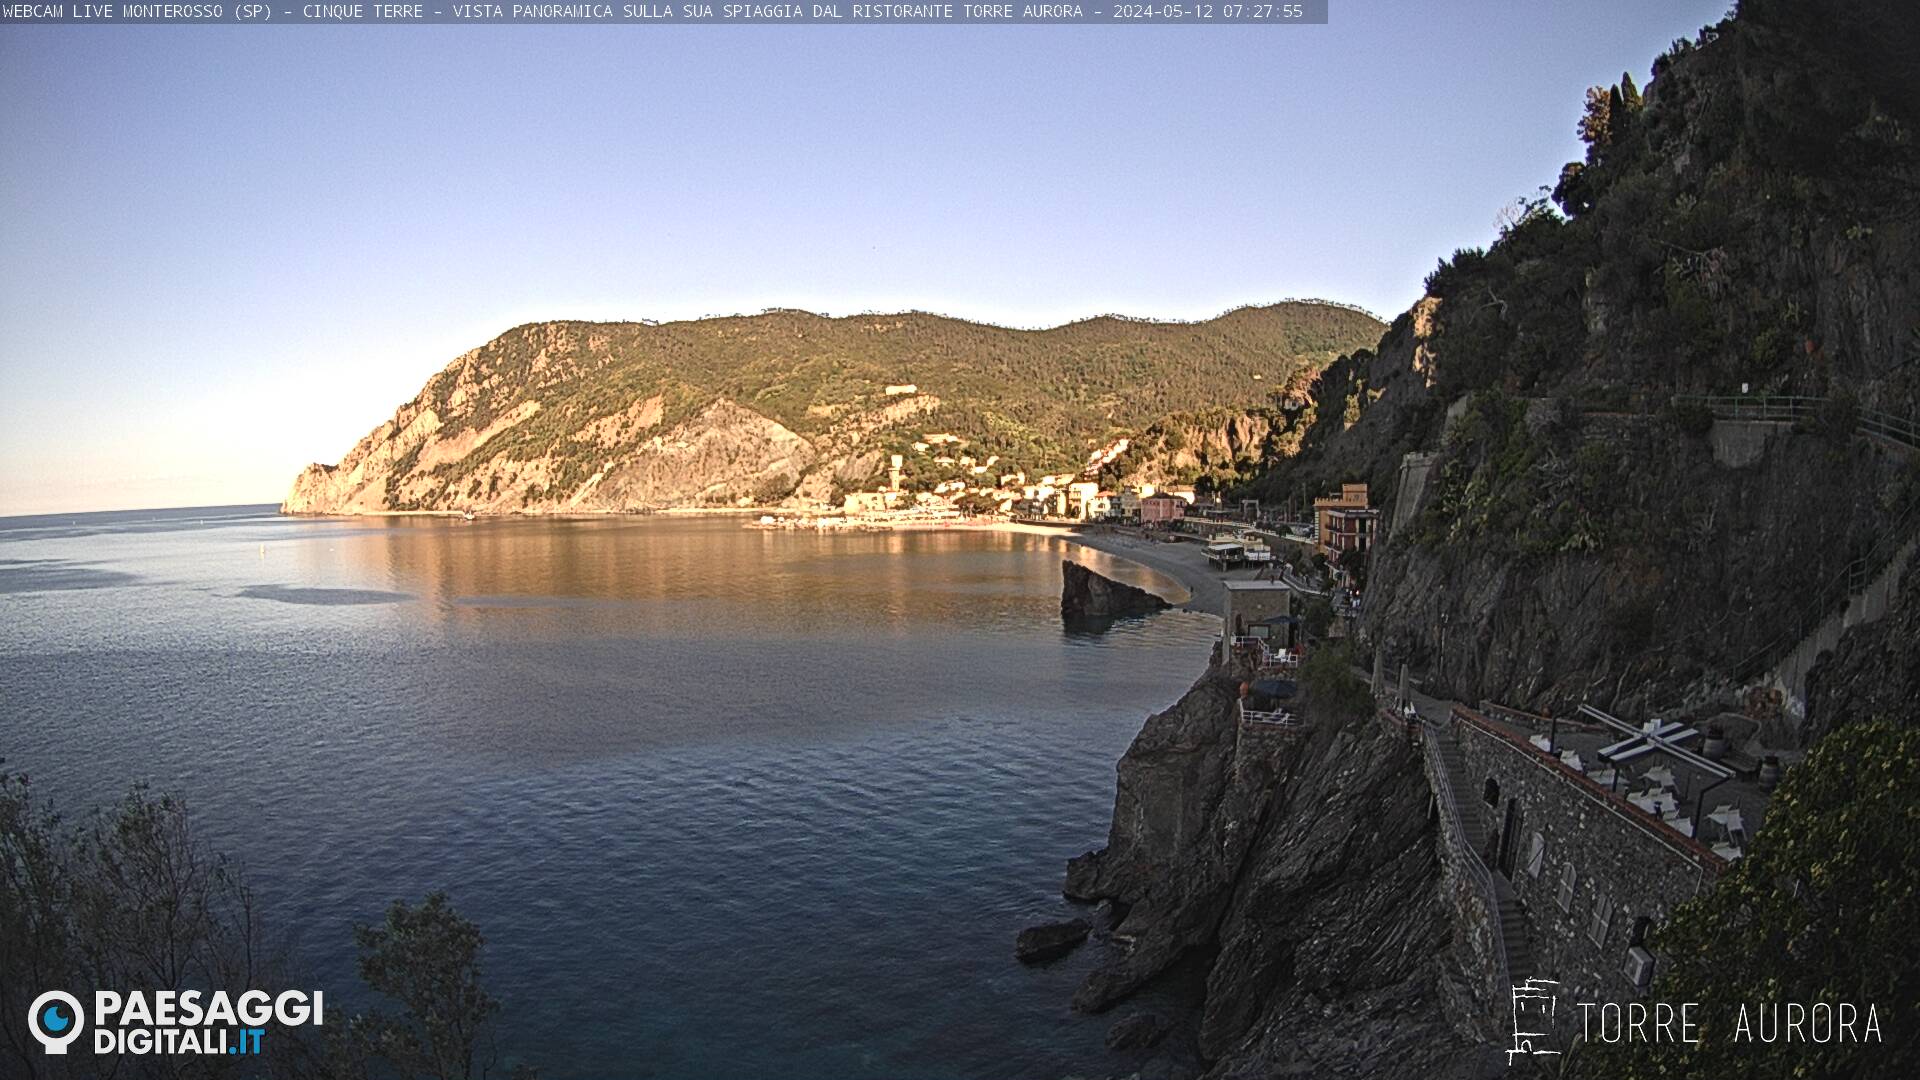 Monterosso al Mare (Cinque Terre) Je. 07:28